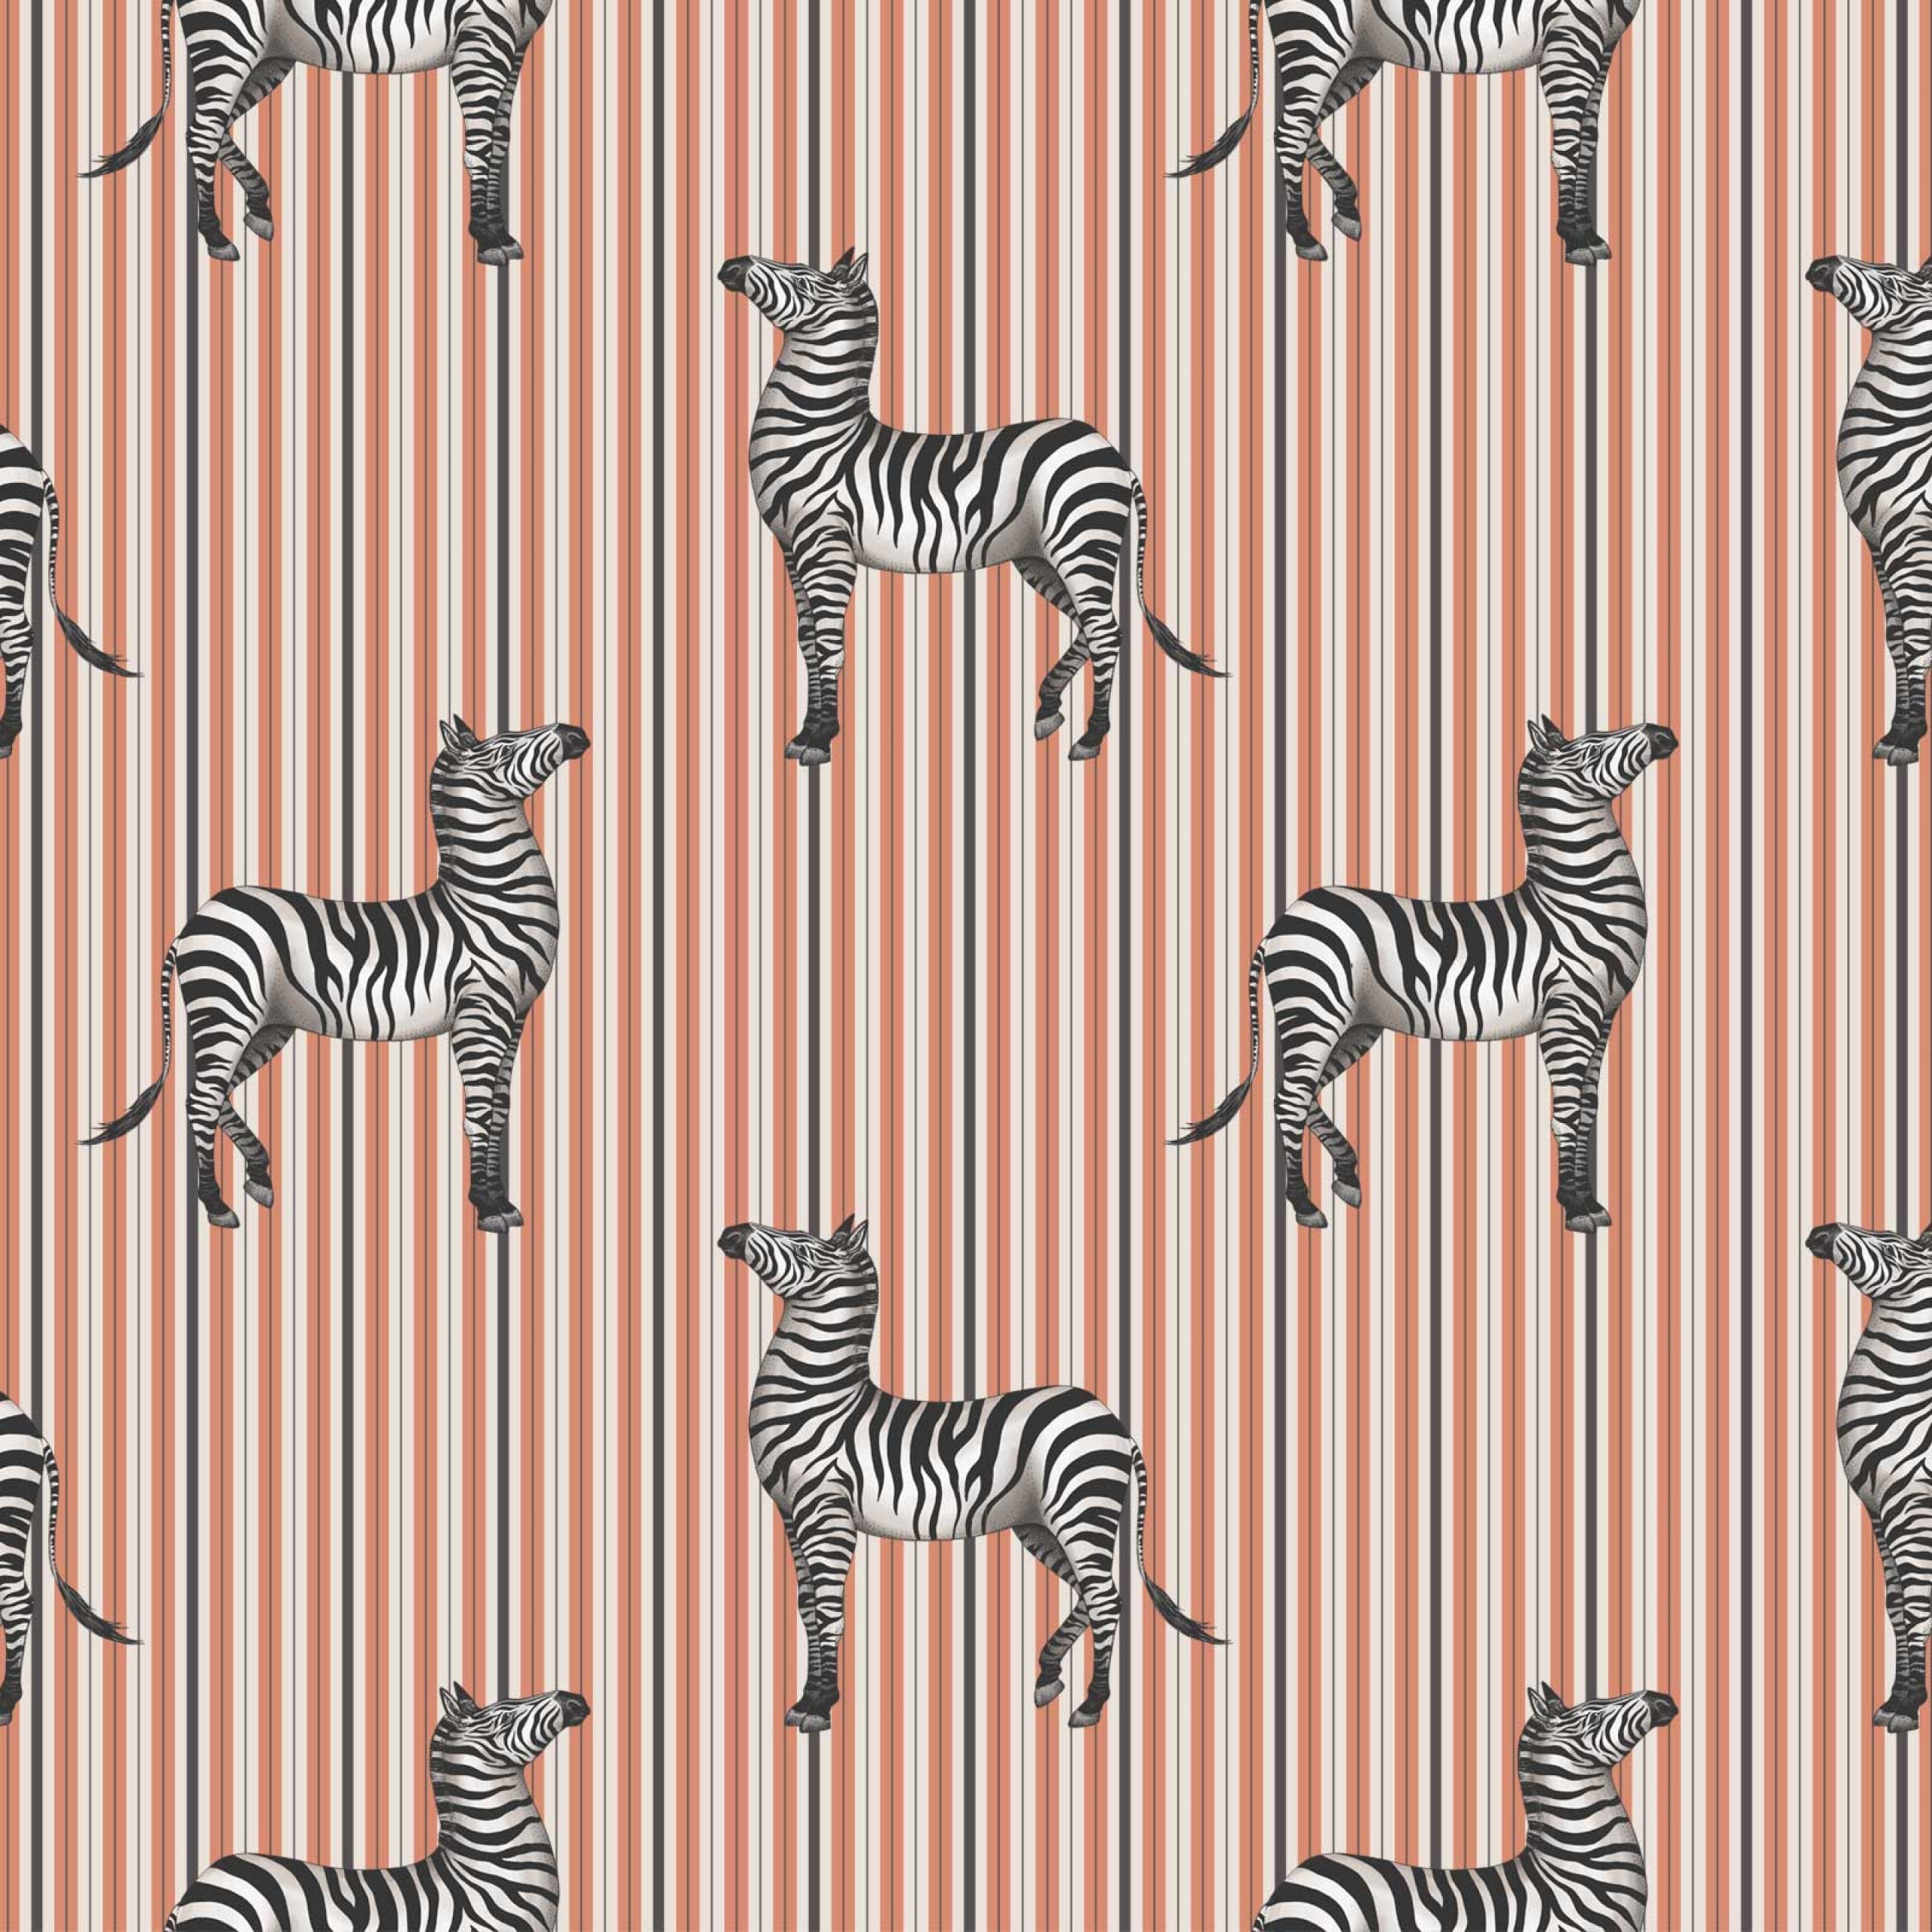 zebra_orange_72dpi